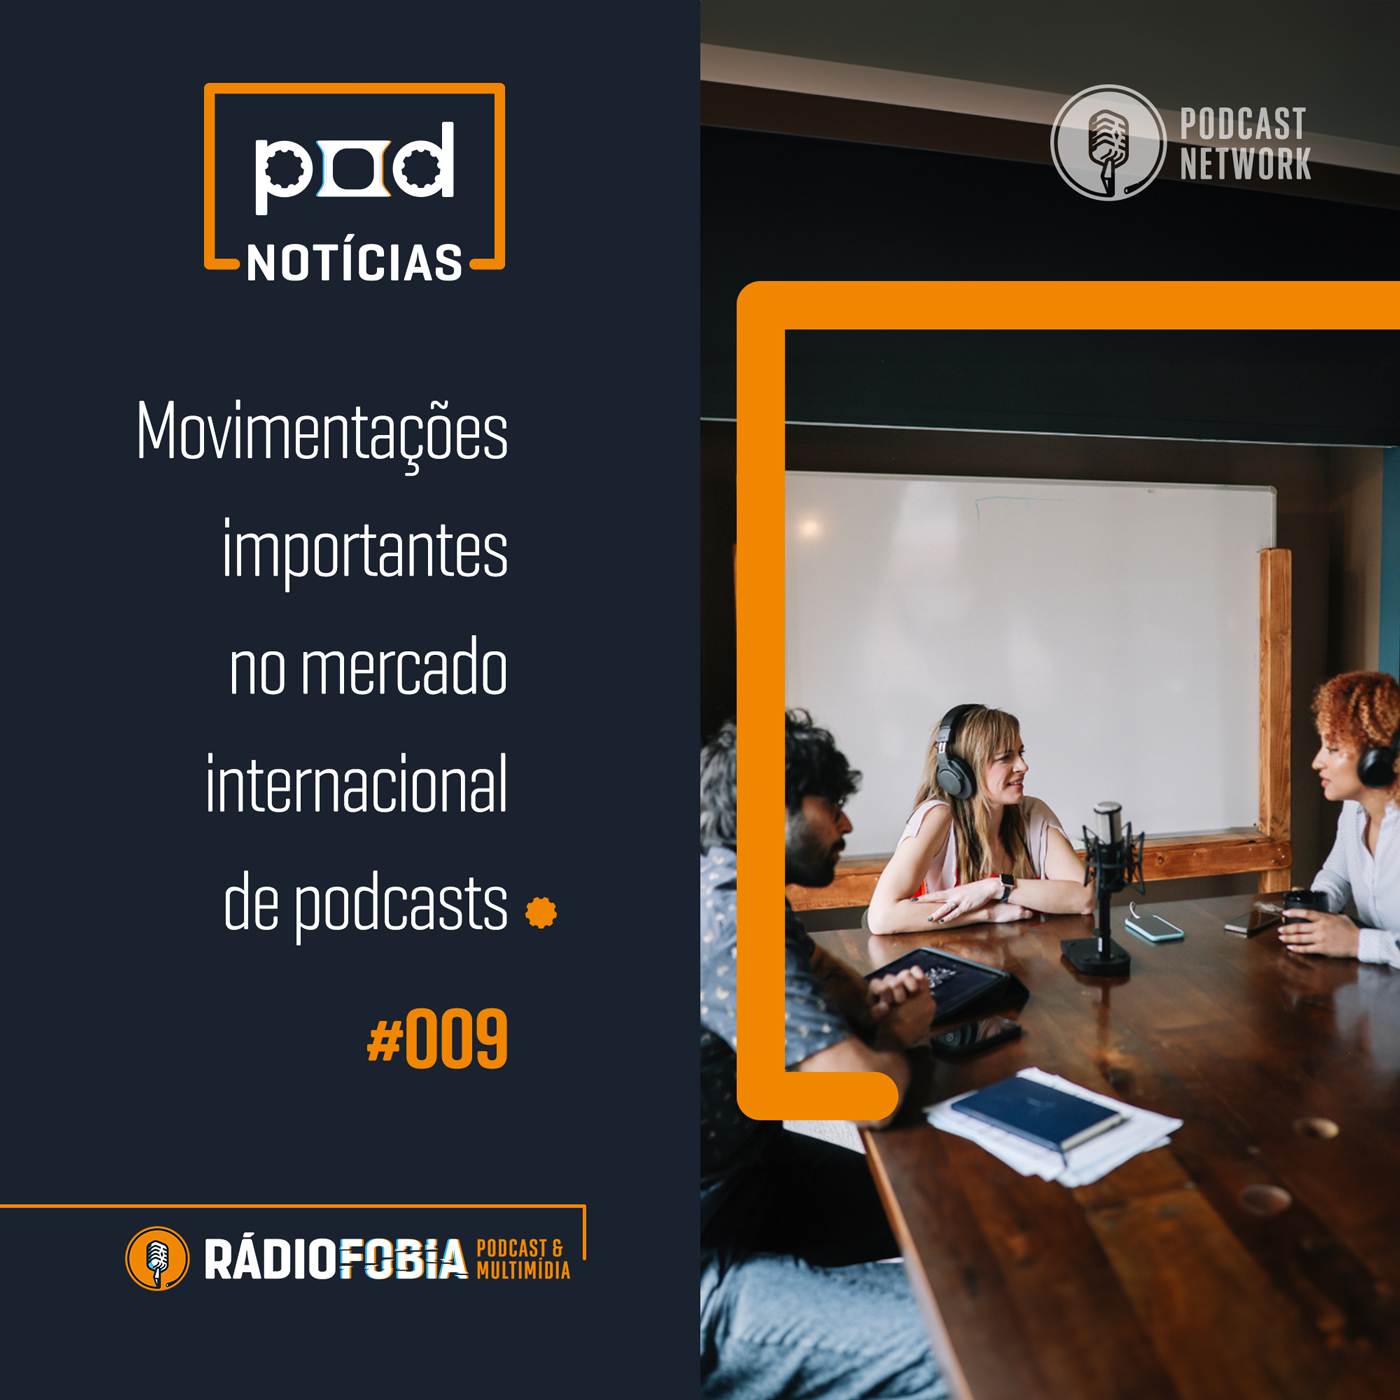 Pod Notícias 009 - Movimentações importantes no mercado internacional de podcasts